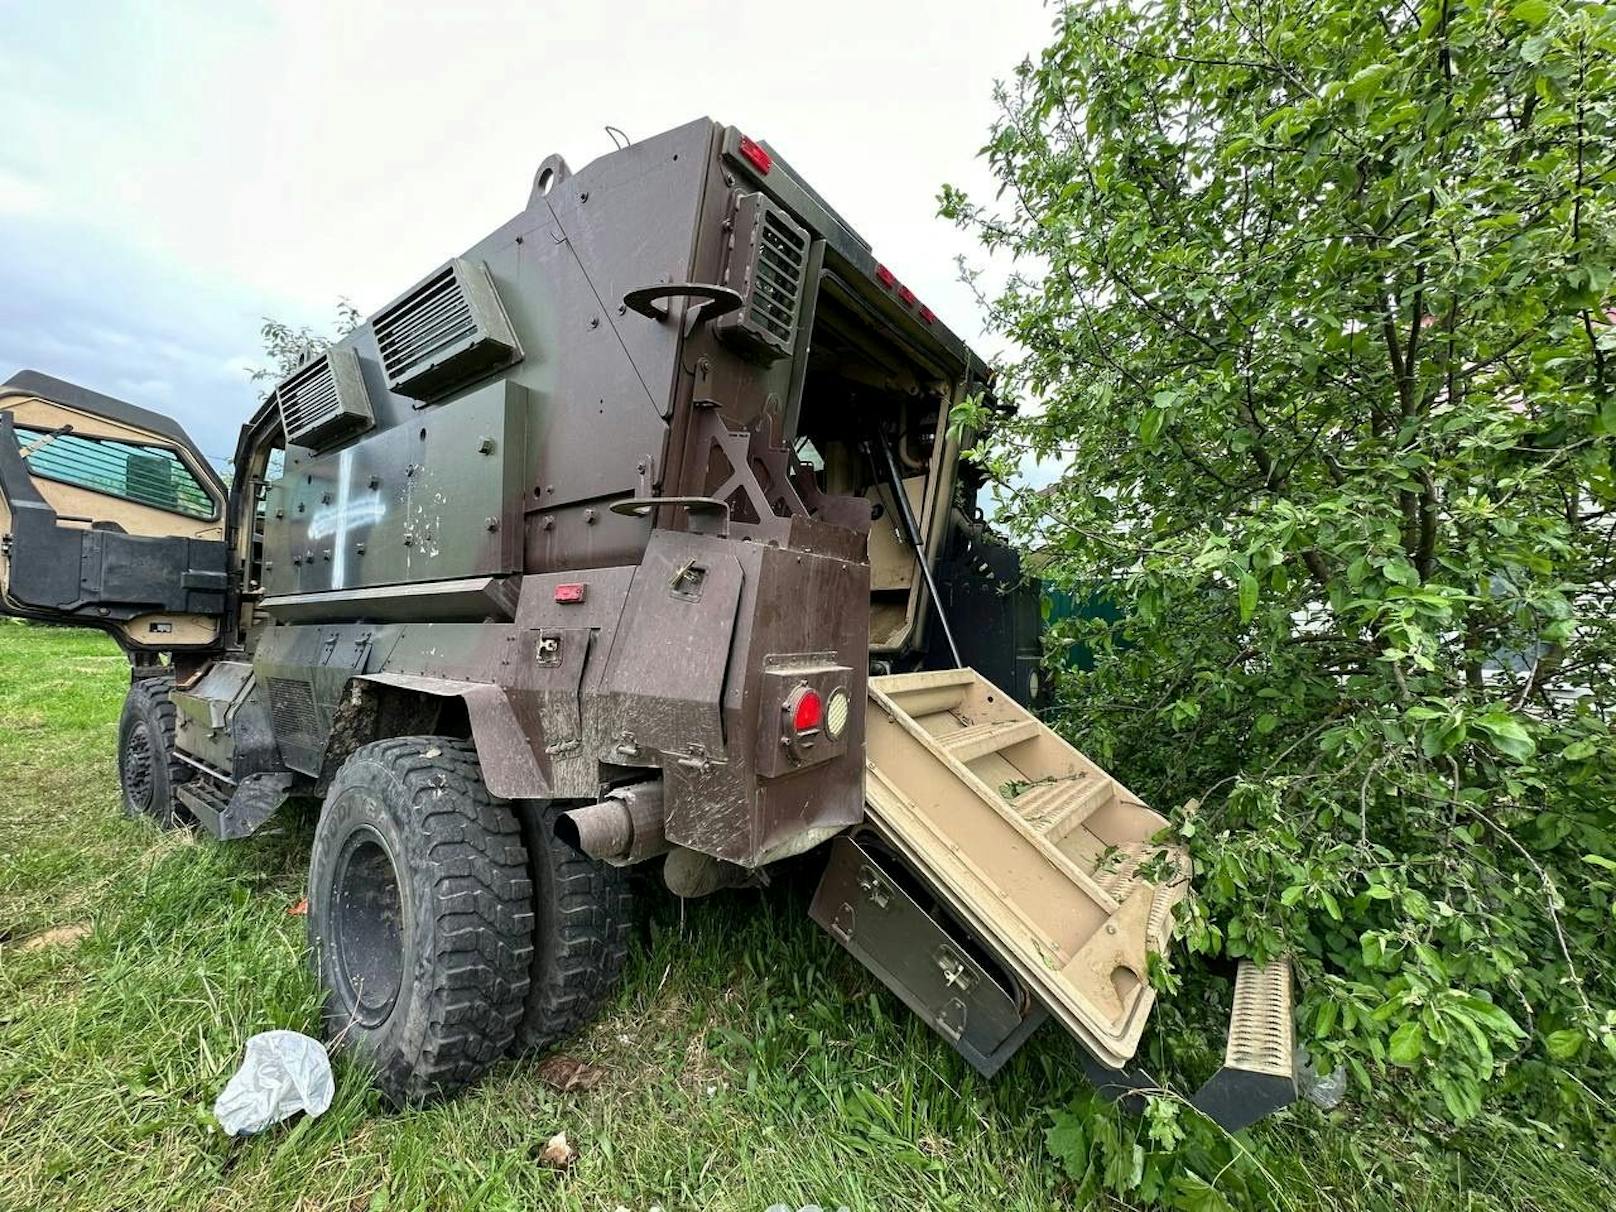 Dieses Fahrzeug wird vom russischen Militär den russischen Partisanen zugeschrieben. Es soll beim Angriff auf die russische Region Belgorod zum Einsatz gekommen sein.